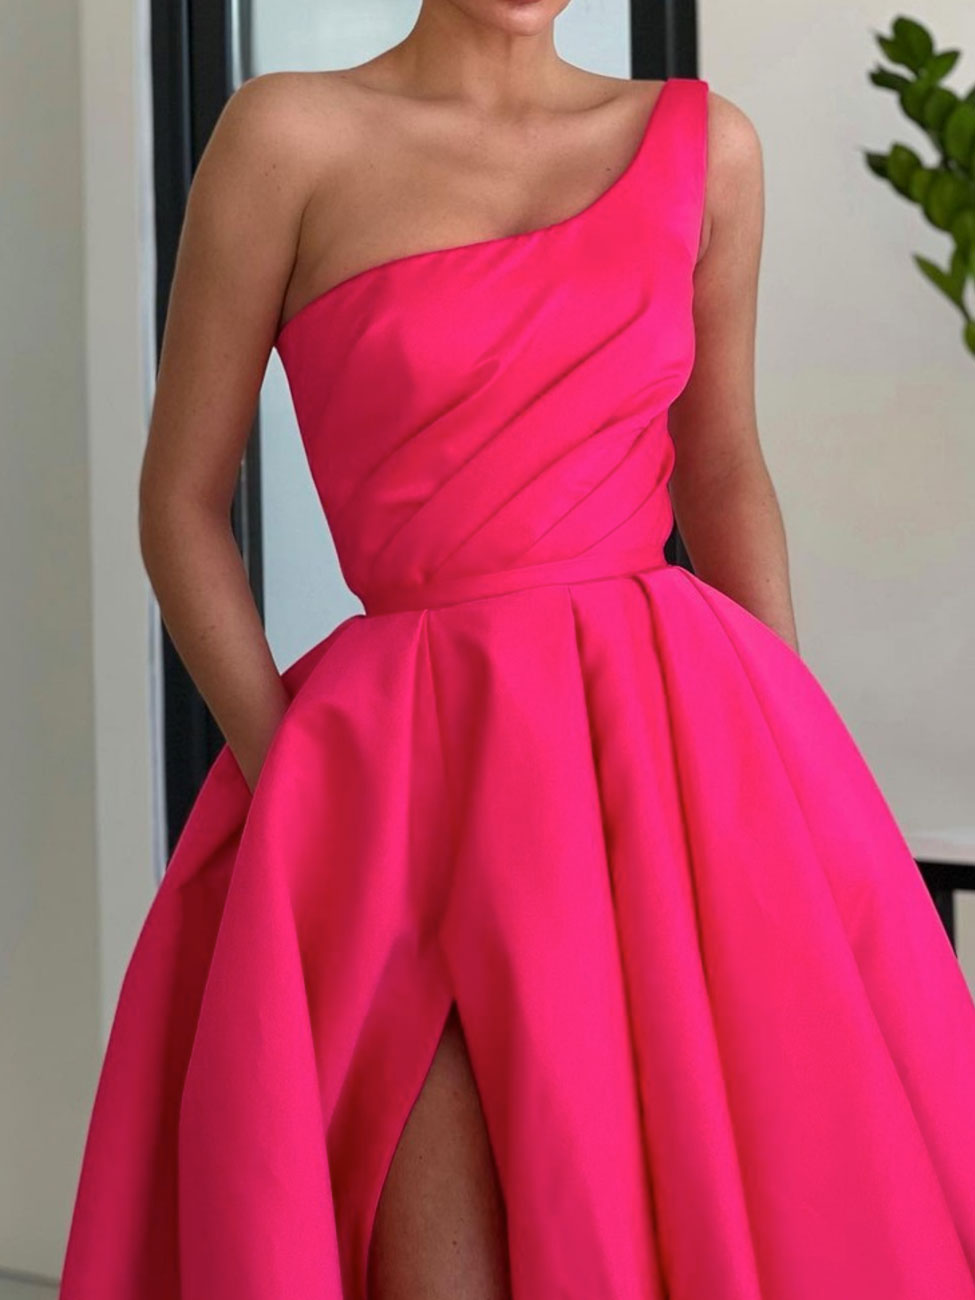 Simple One Shoulder Satin Pink Long Prom Dress, Pink Formal Evening Dress